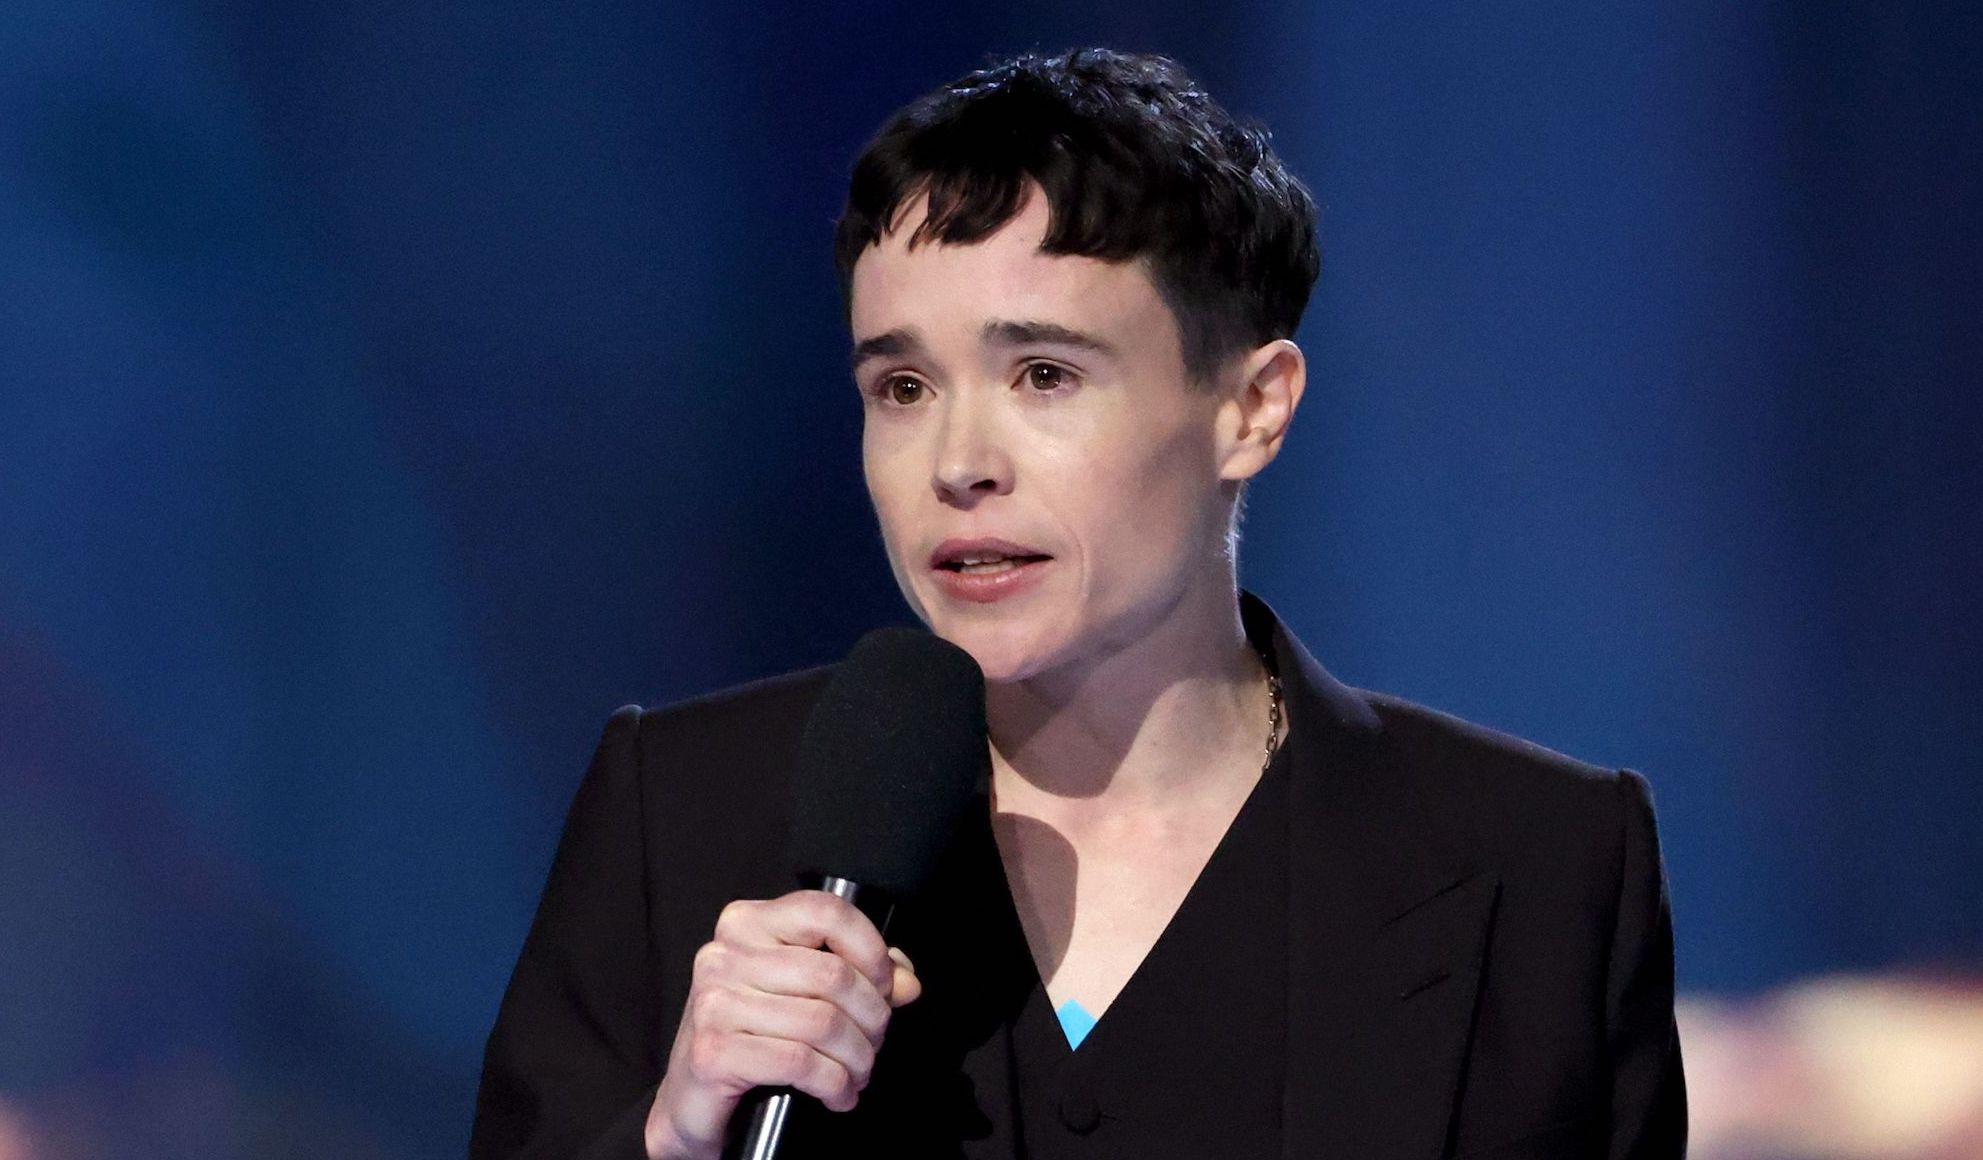 Elliot Page slams 'devastating' LGBTQ rights attacks at Juno Awards